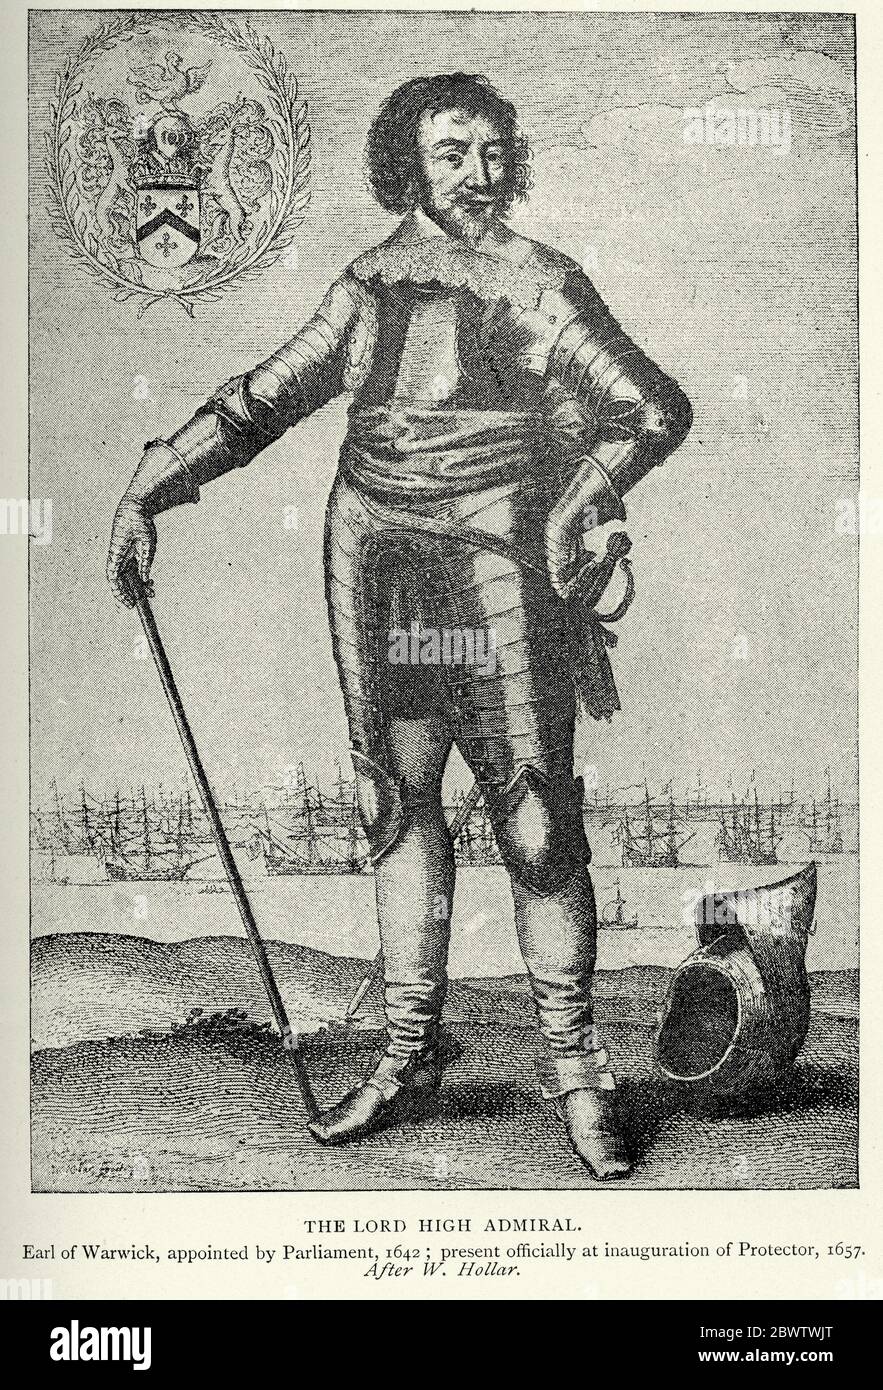 Signore Alto Ammiraglio, conte di Warwick nominato dal Parlamento 1642 Foto Stock